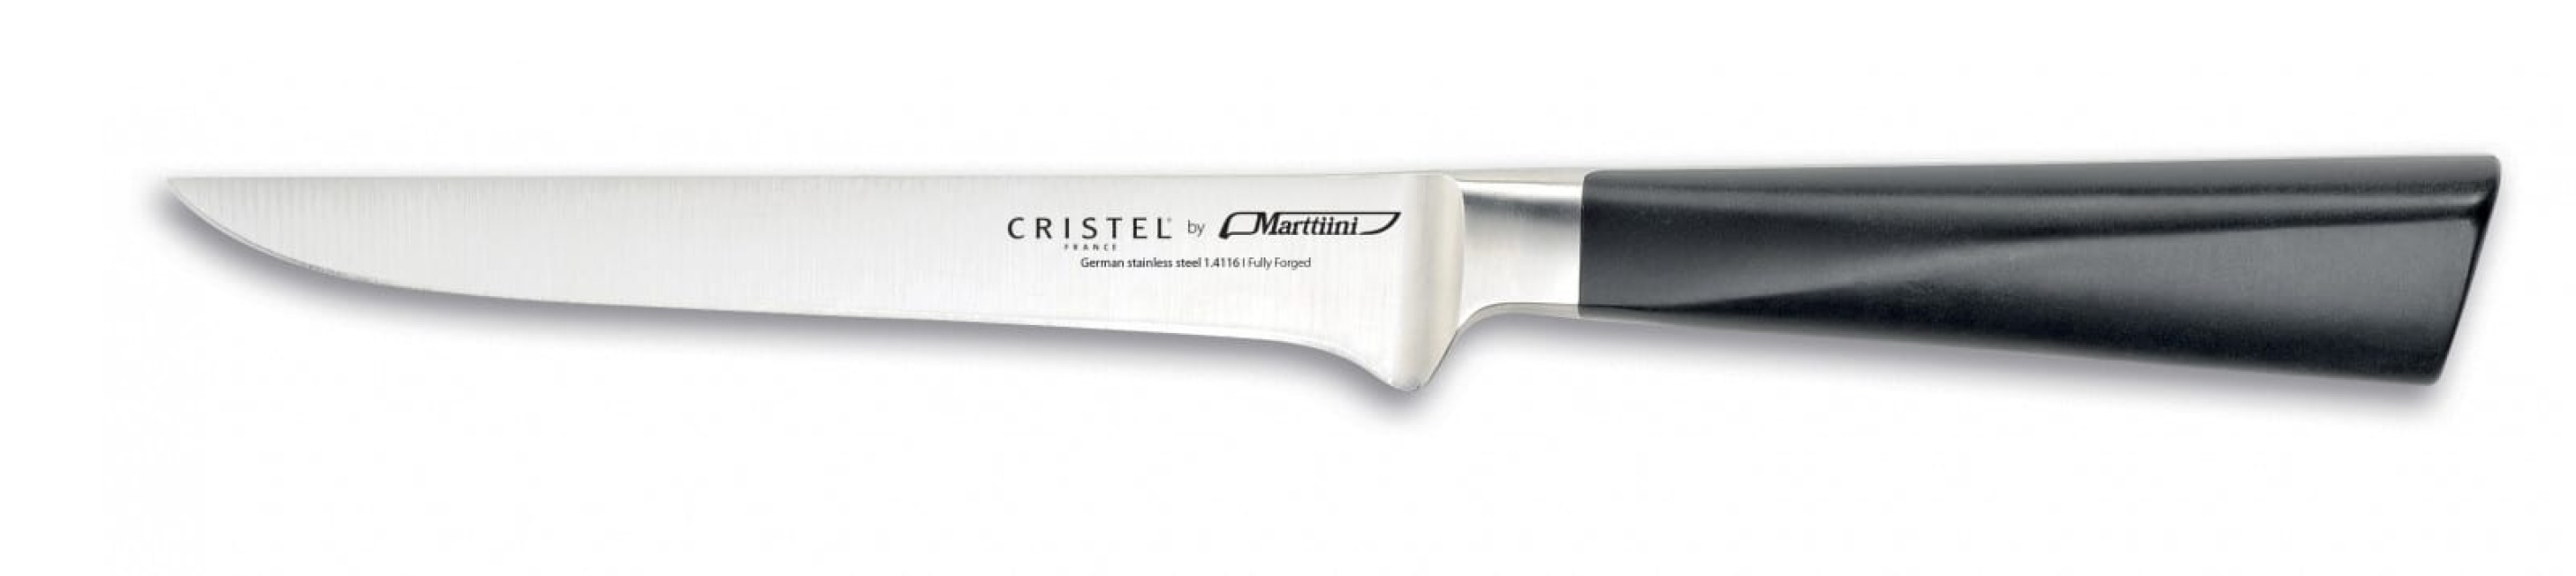 Nóż do wykrawania, 15 cm - Cristel